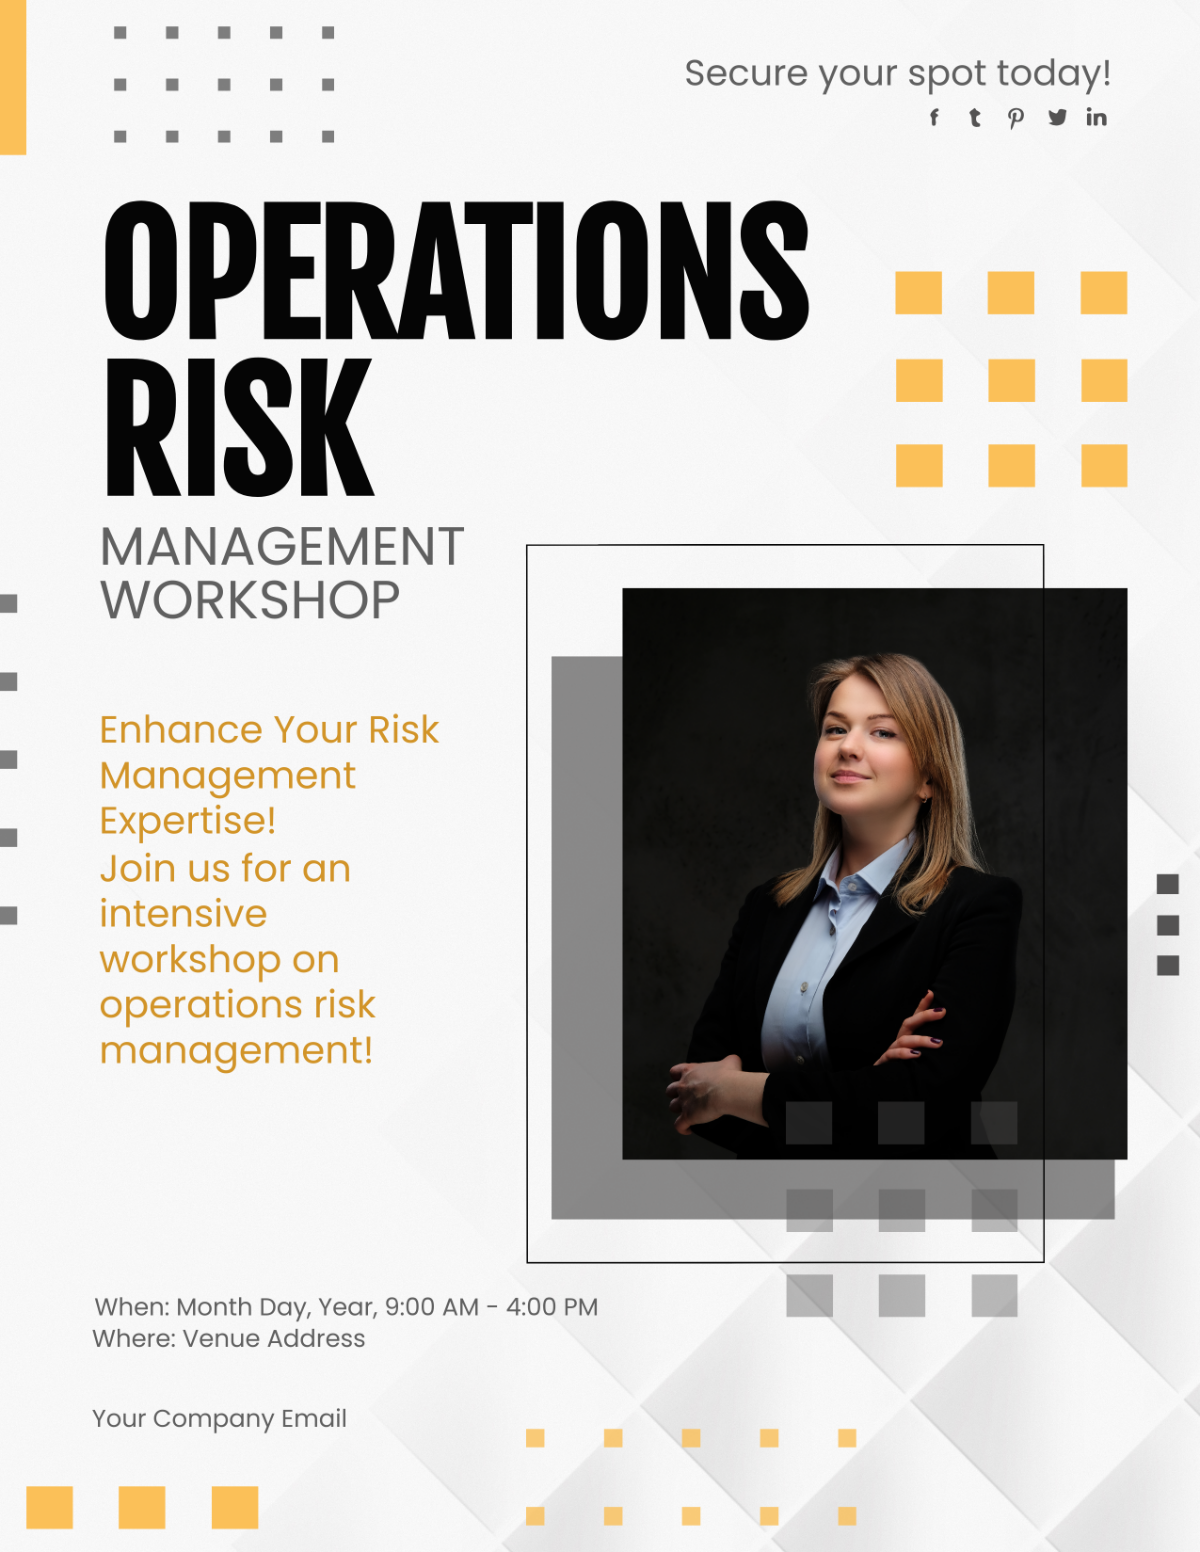 Operations Risk Management Workshop Flyer Template